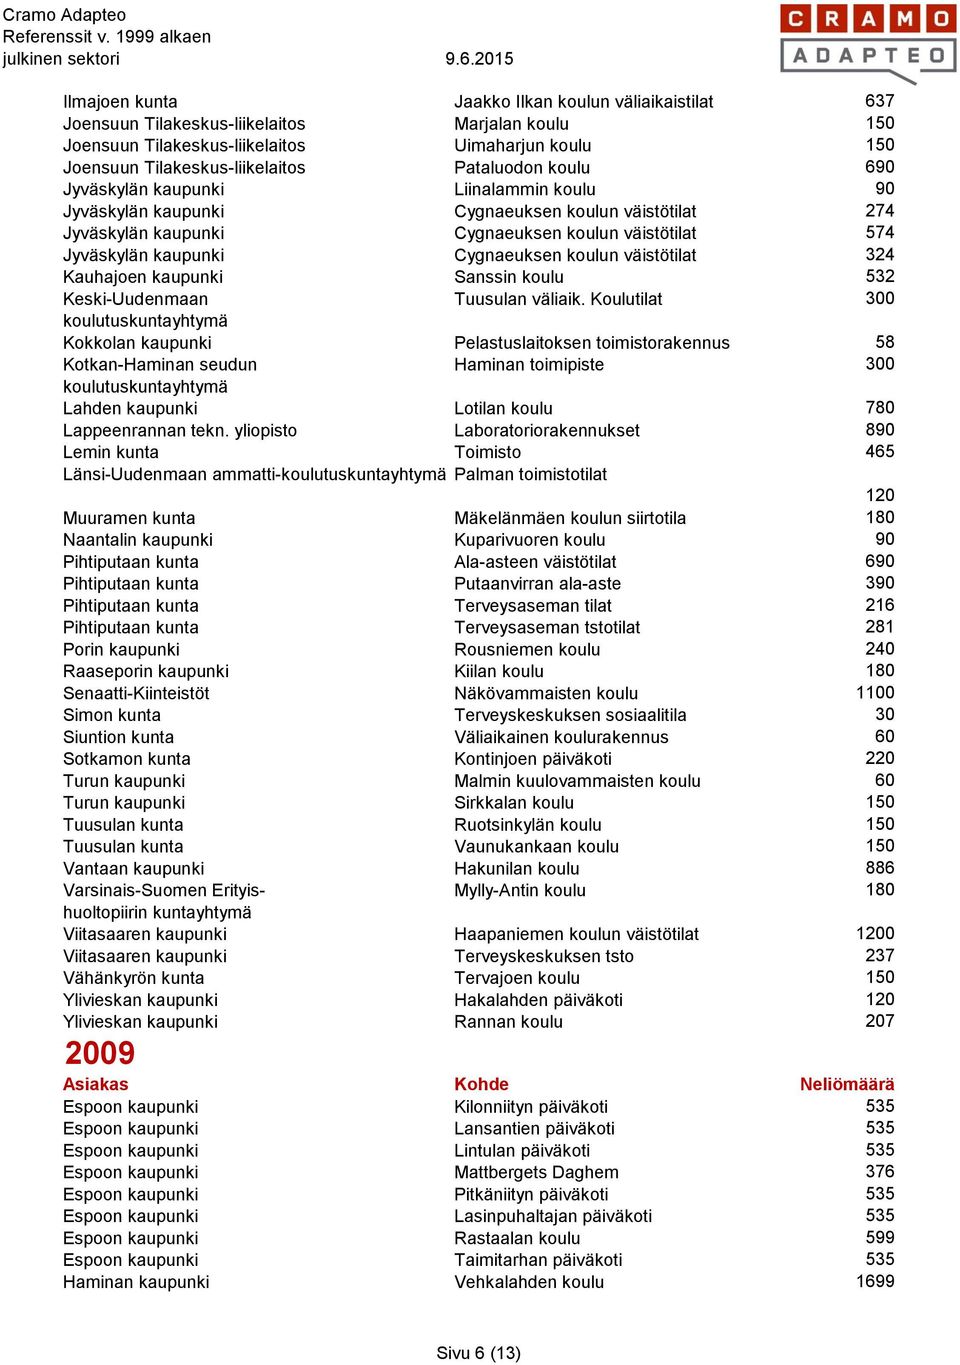 Cygnaeuksen koulun väistötilat 324 Kauhajoen kaupunki Sanssin koulu 532 Keski-Uudenmaan Tuusulan väliaik.